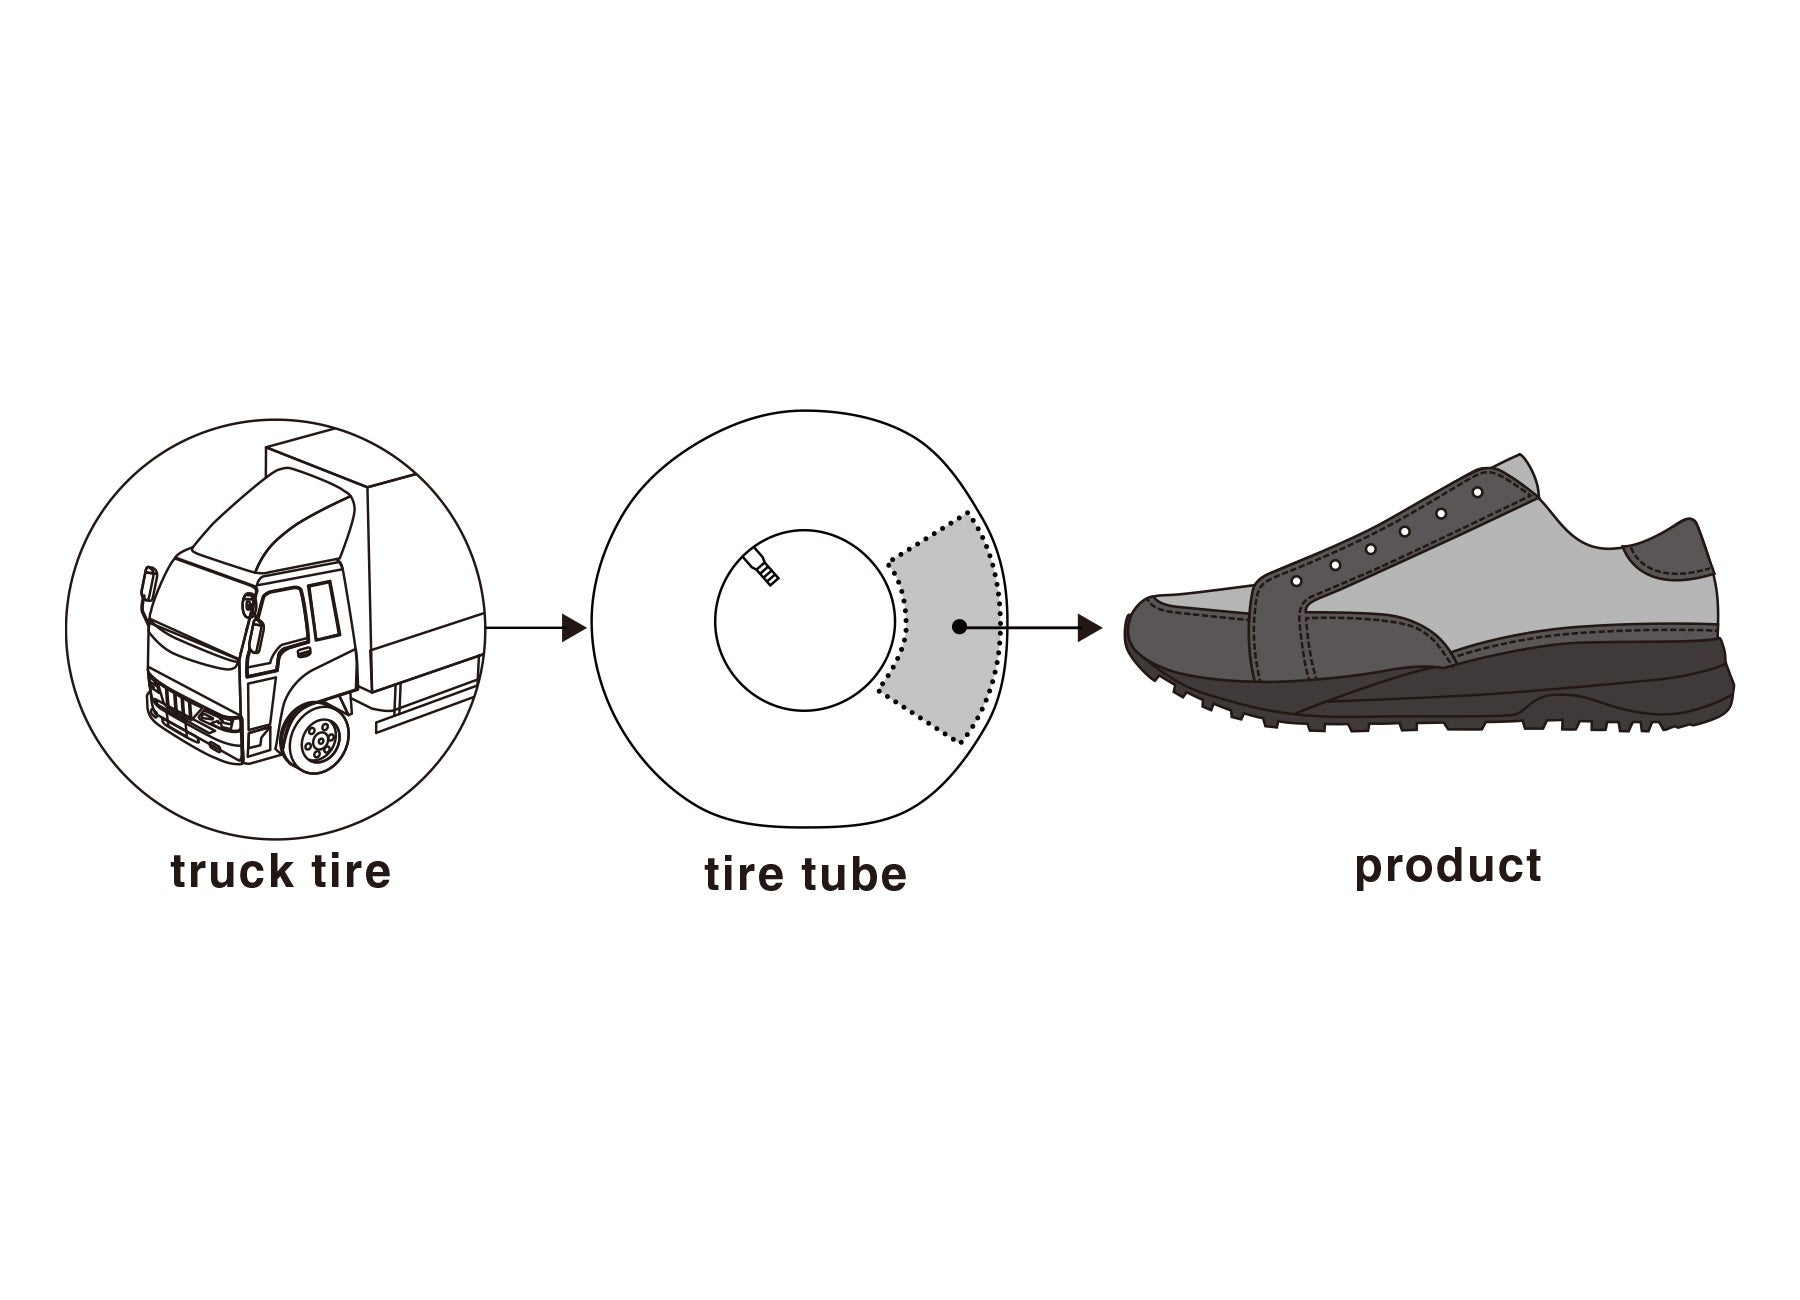 日本唯一※の廃棄タイヤチューブを使うスニーカーシリーズから、濡れた路面でのスリップを軽減する高機能スニ...